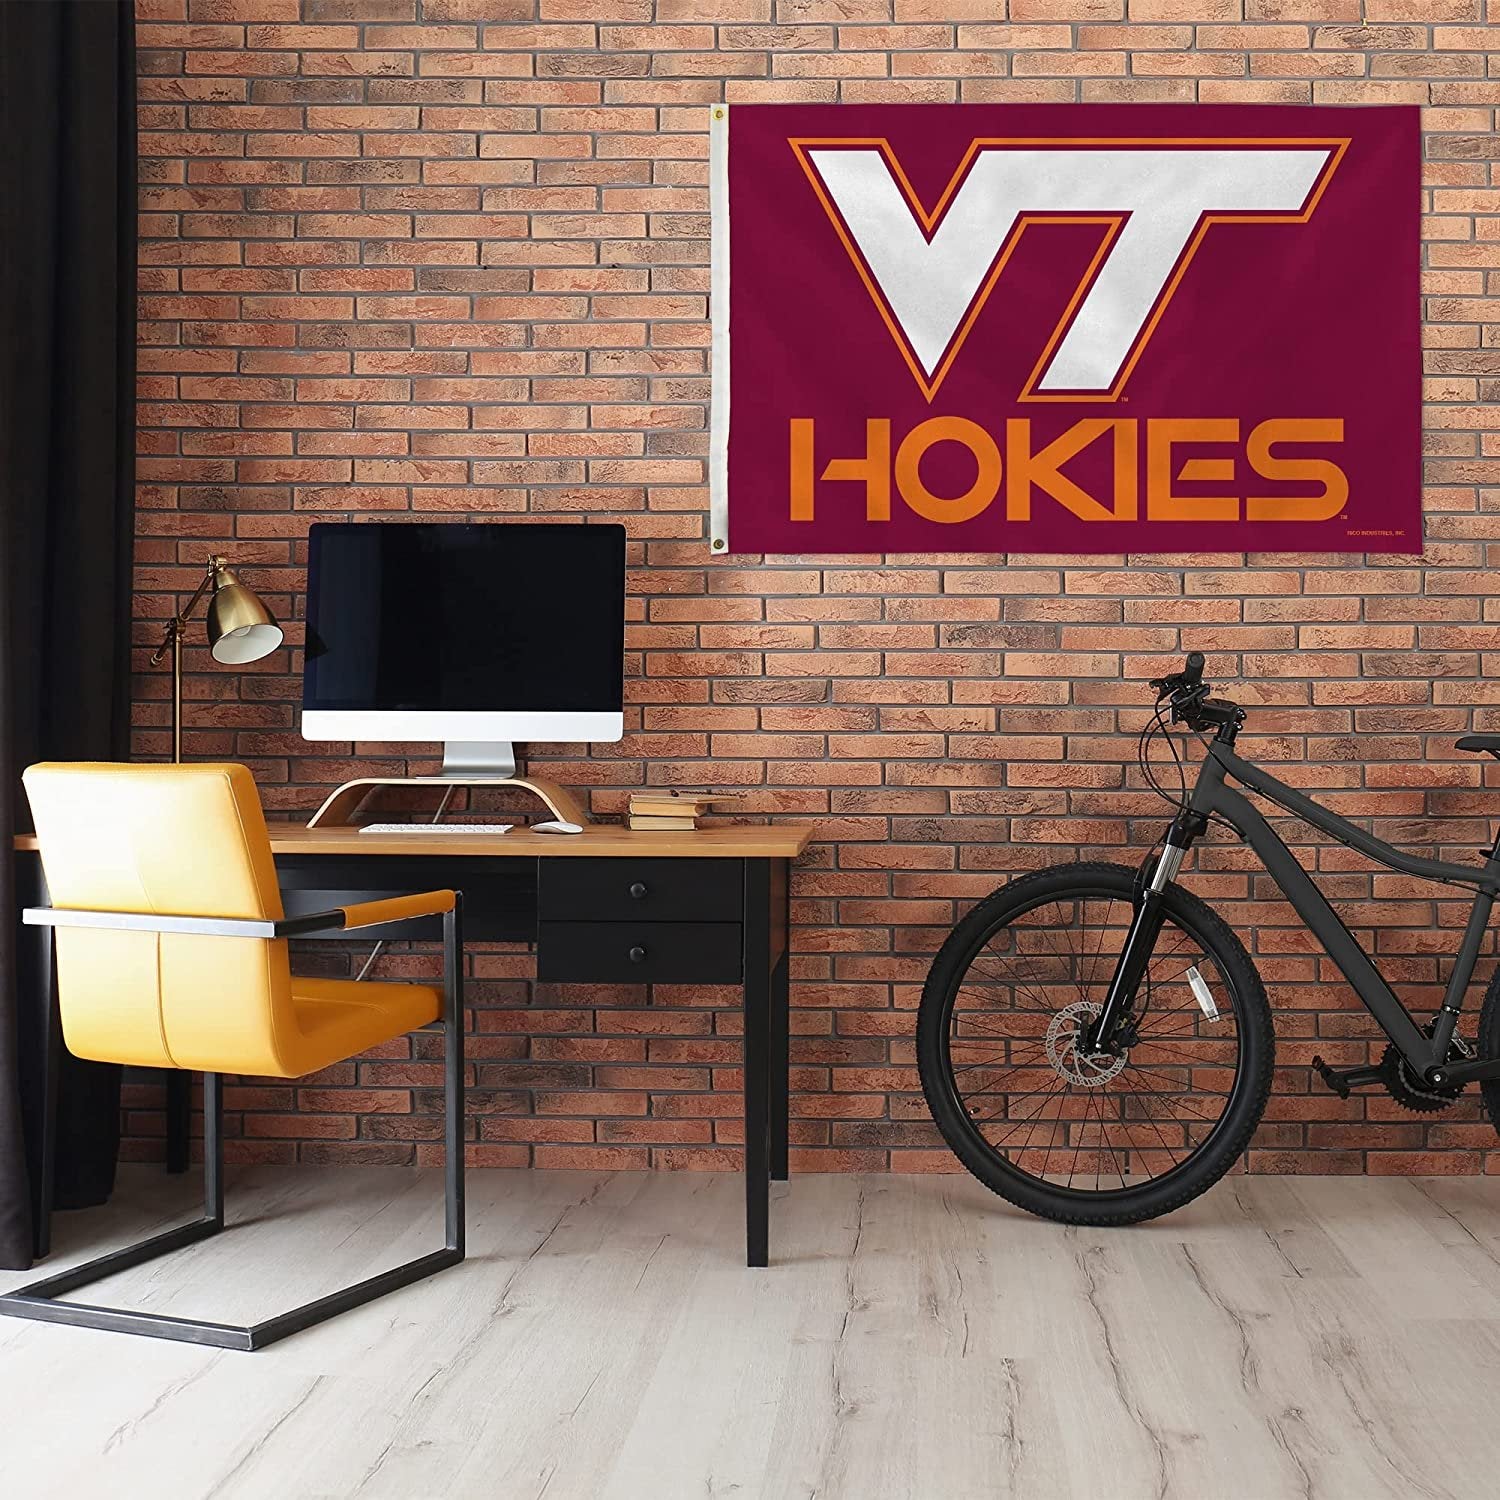 Virginia Tech Hokies Premium 3x5 Flag Banner Metal Grommets Outdoor Indoor